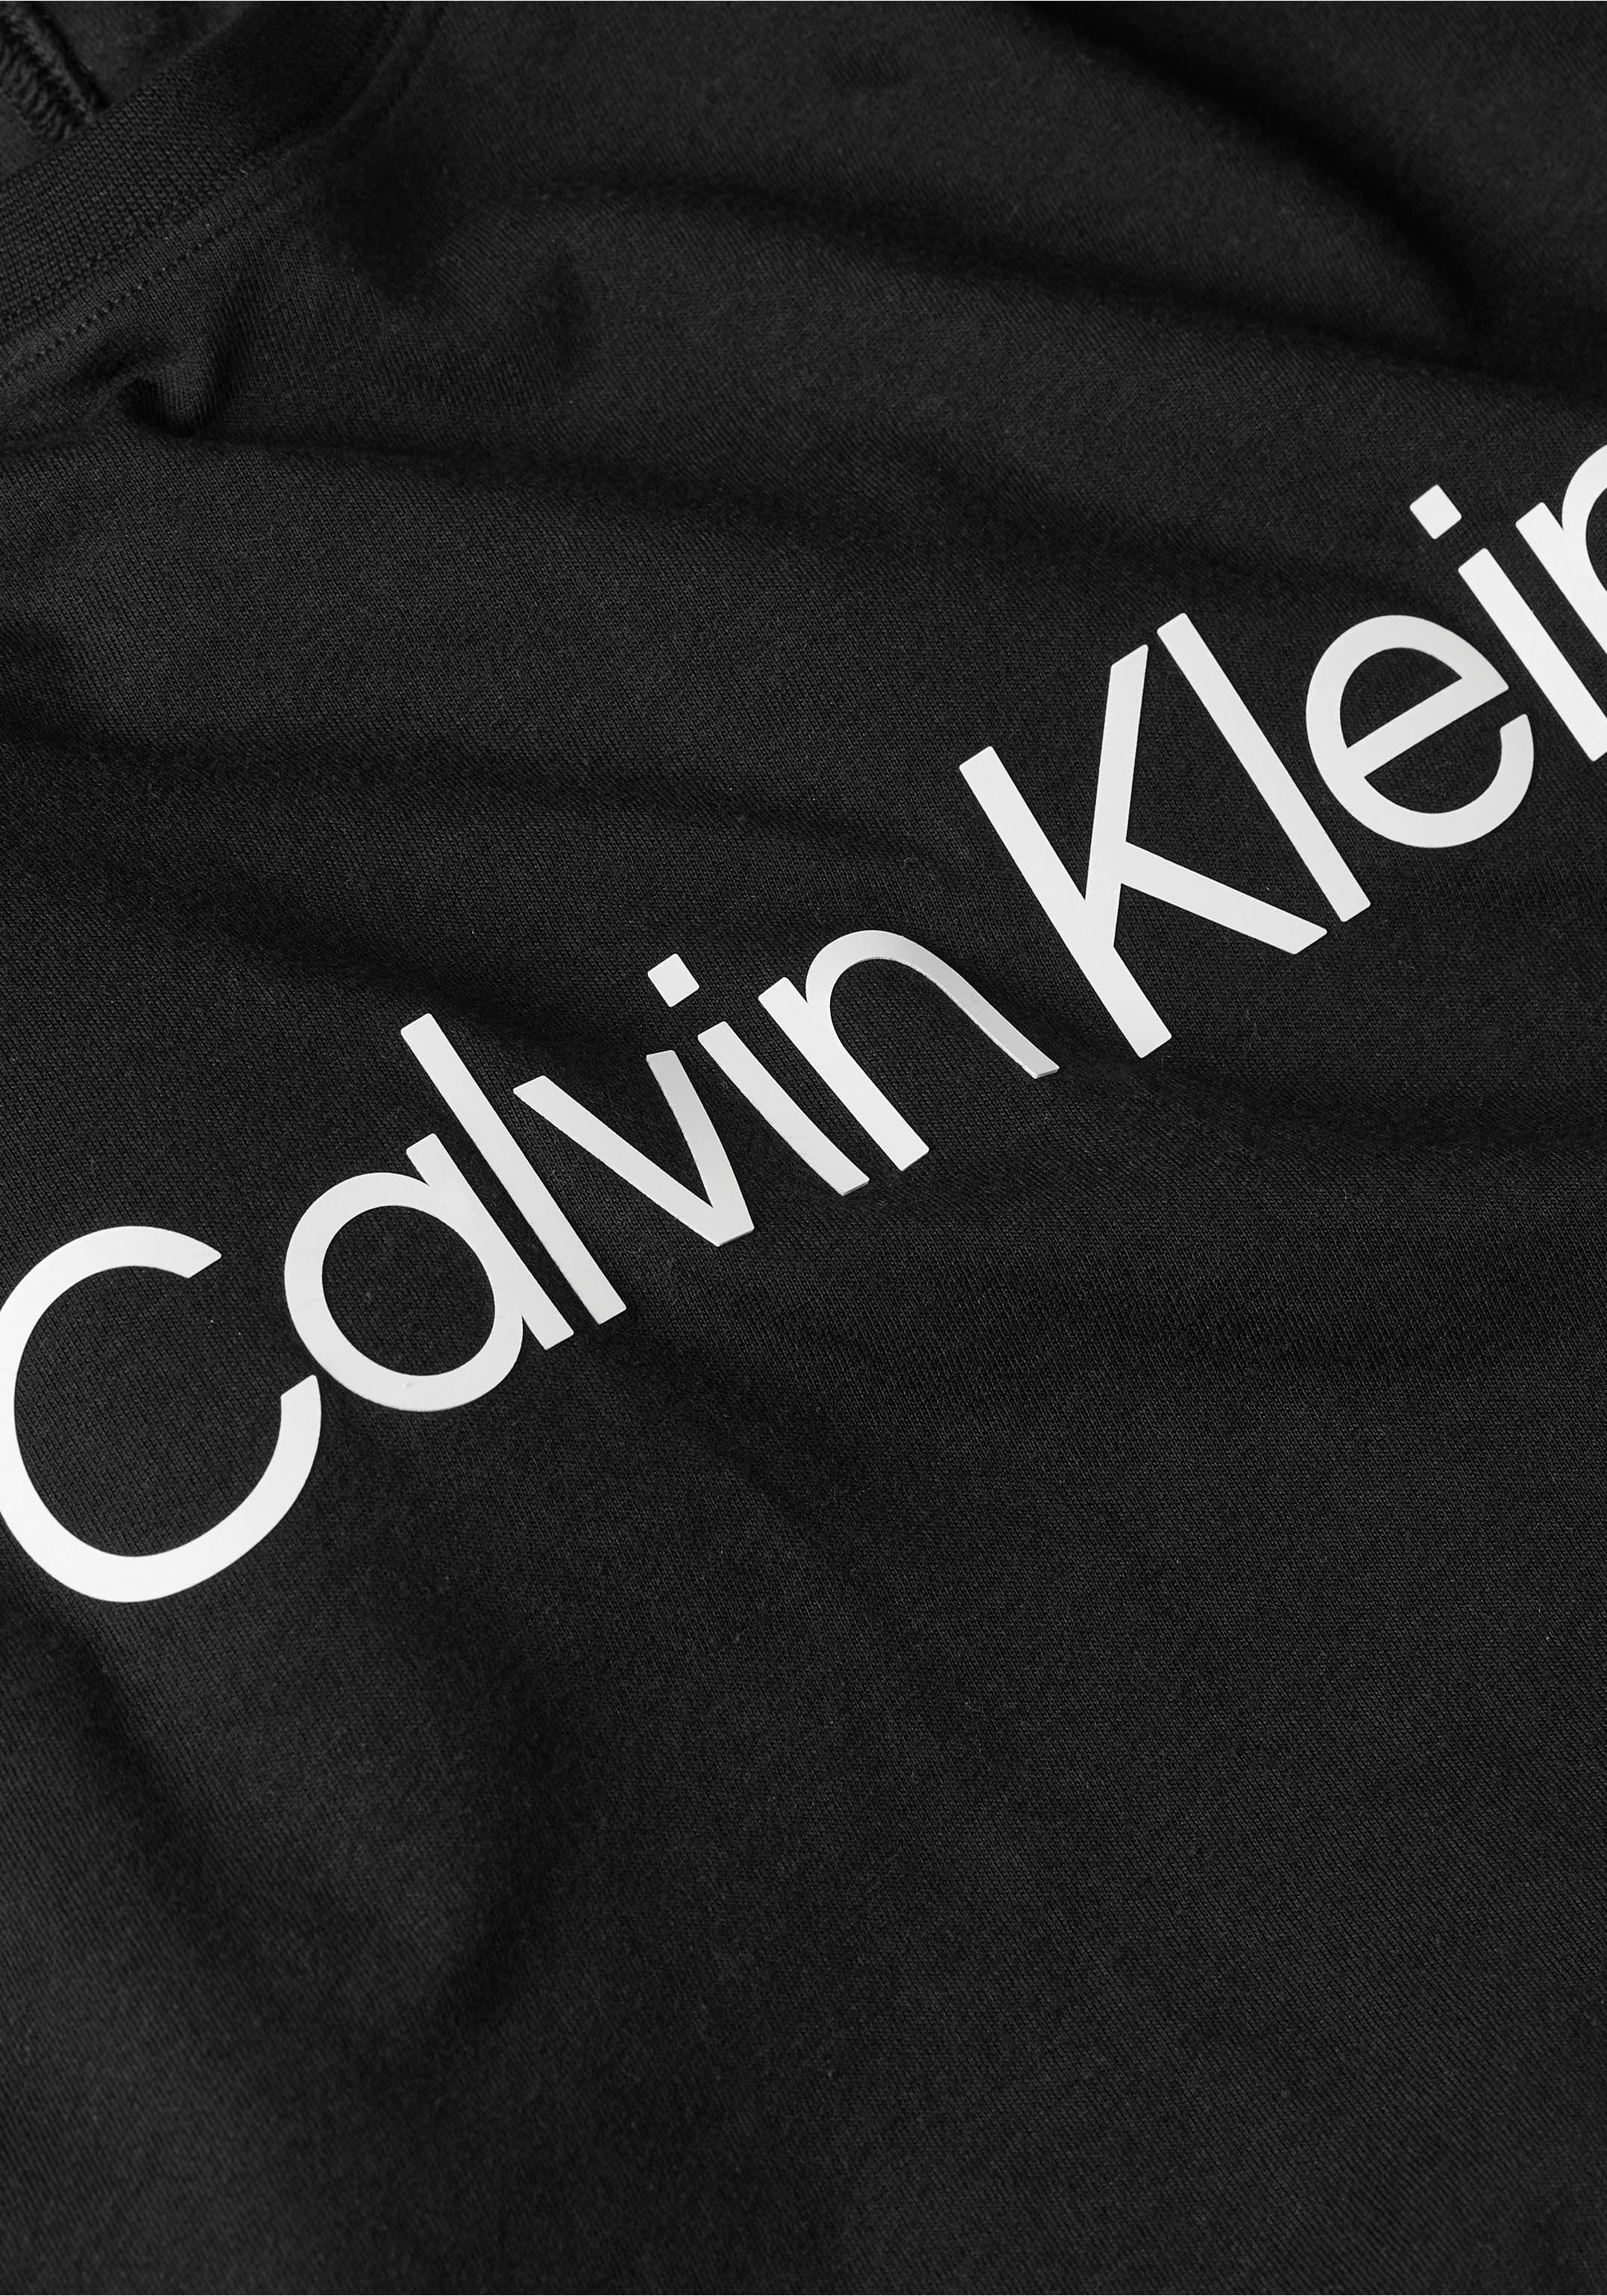 Klein Calvin T-Shirt Sport